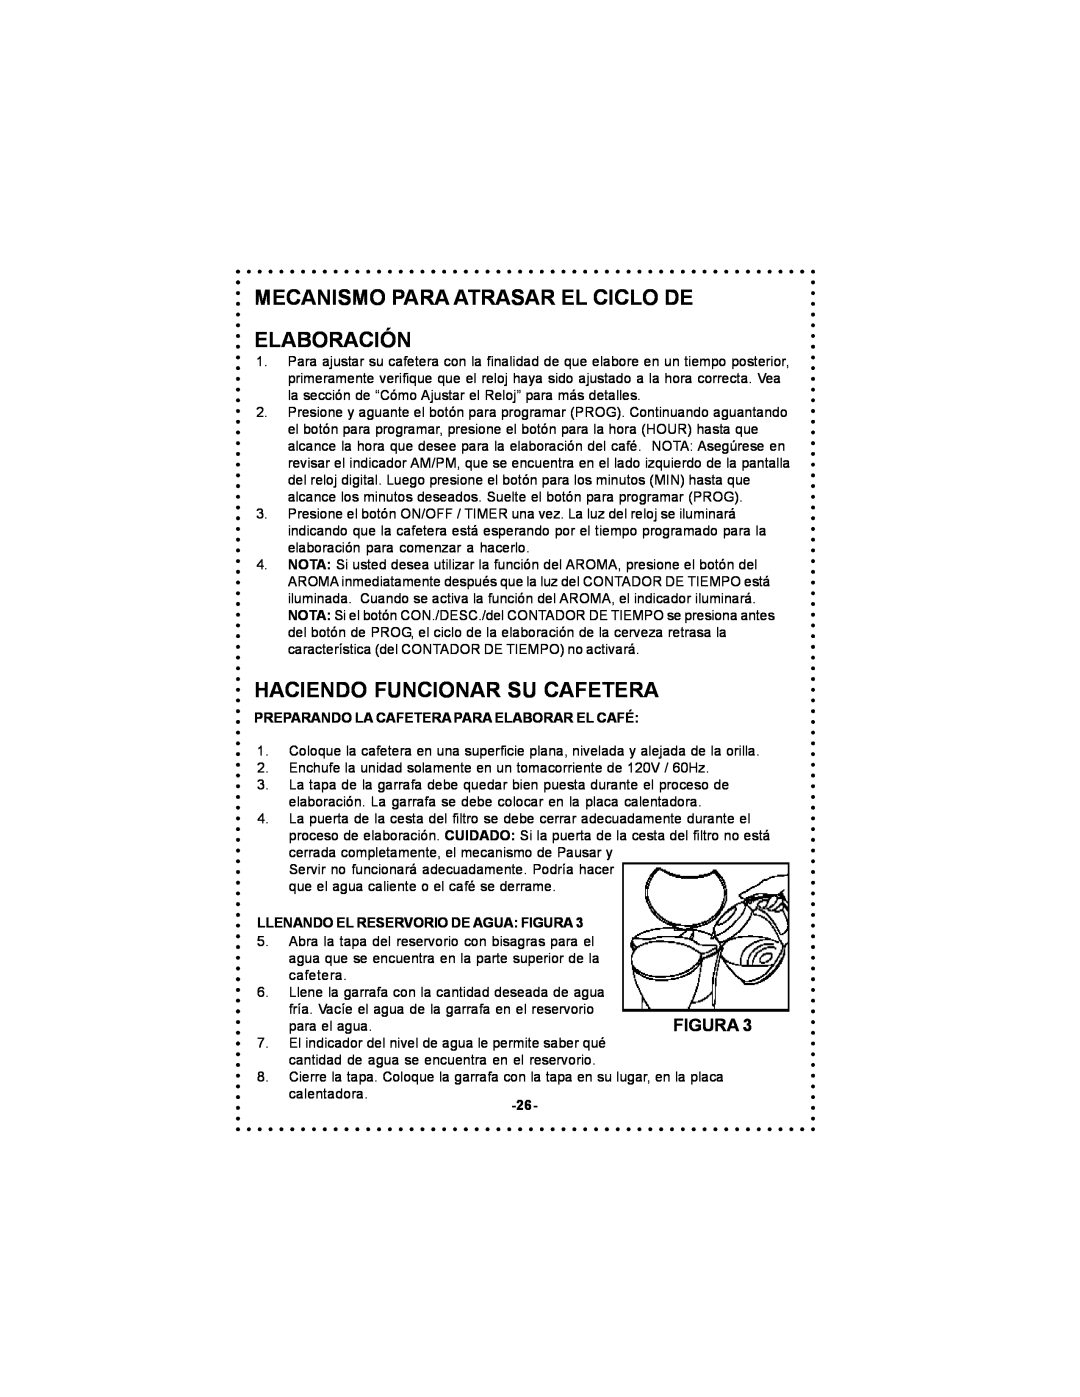 DeLonghi DC59TW instruction manual Mecanismo Para Atrasar El Ciclo De Elaboración, Haciendo Funcionar Su Cafetera 